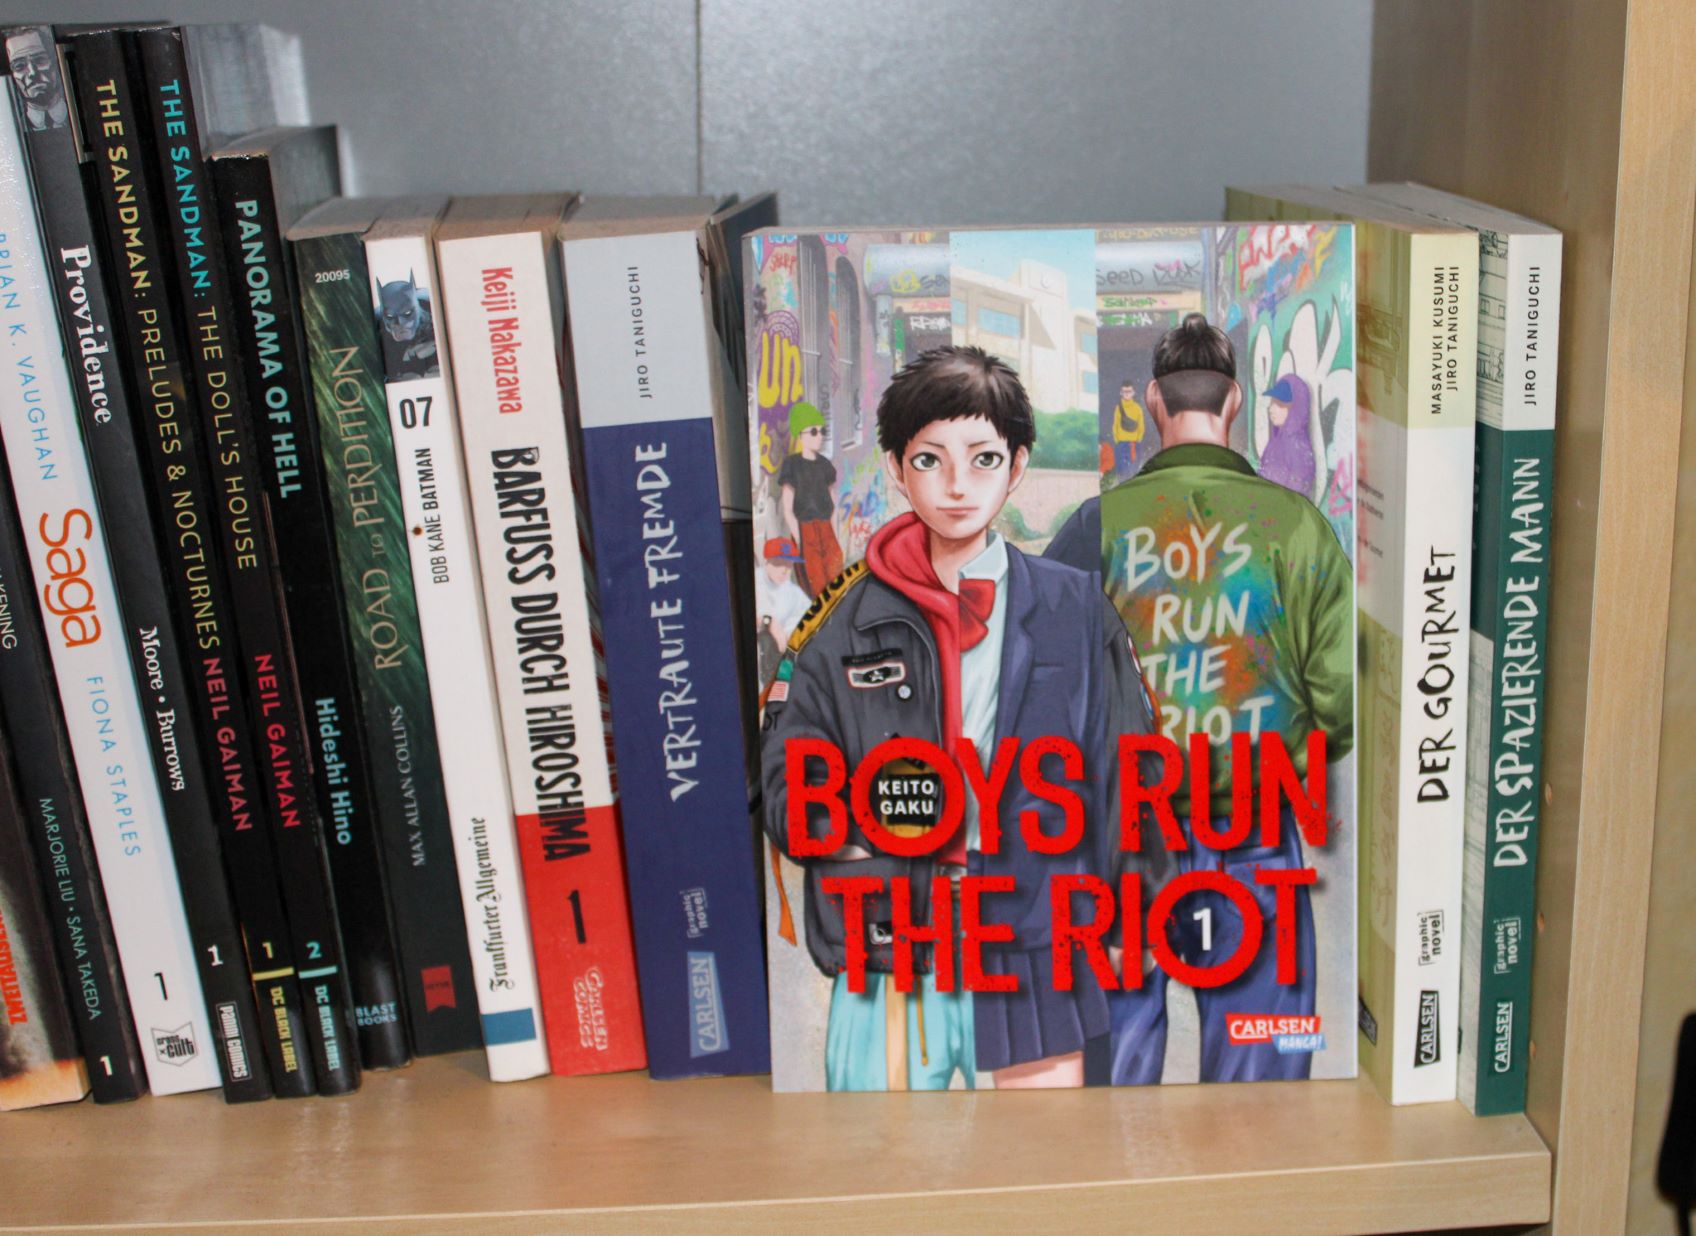 Gebundene deutsche Ausgabe von "Boys Run The Riot 1" mit Cover nach vorne in einem Bücherregal vor einer Reihe anderer Mangas fotografiert.